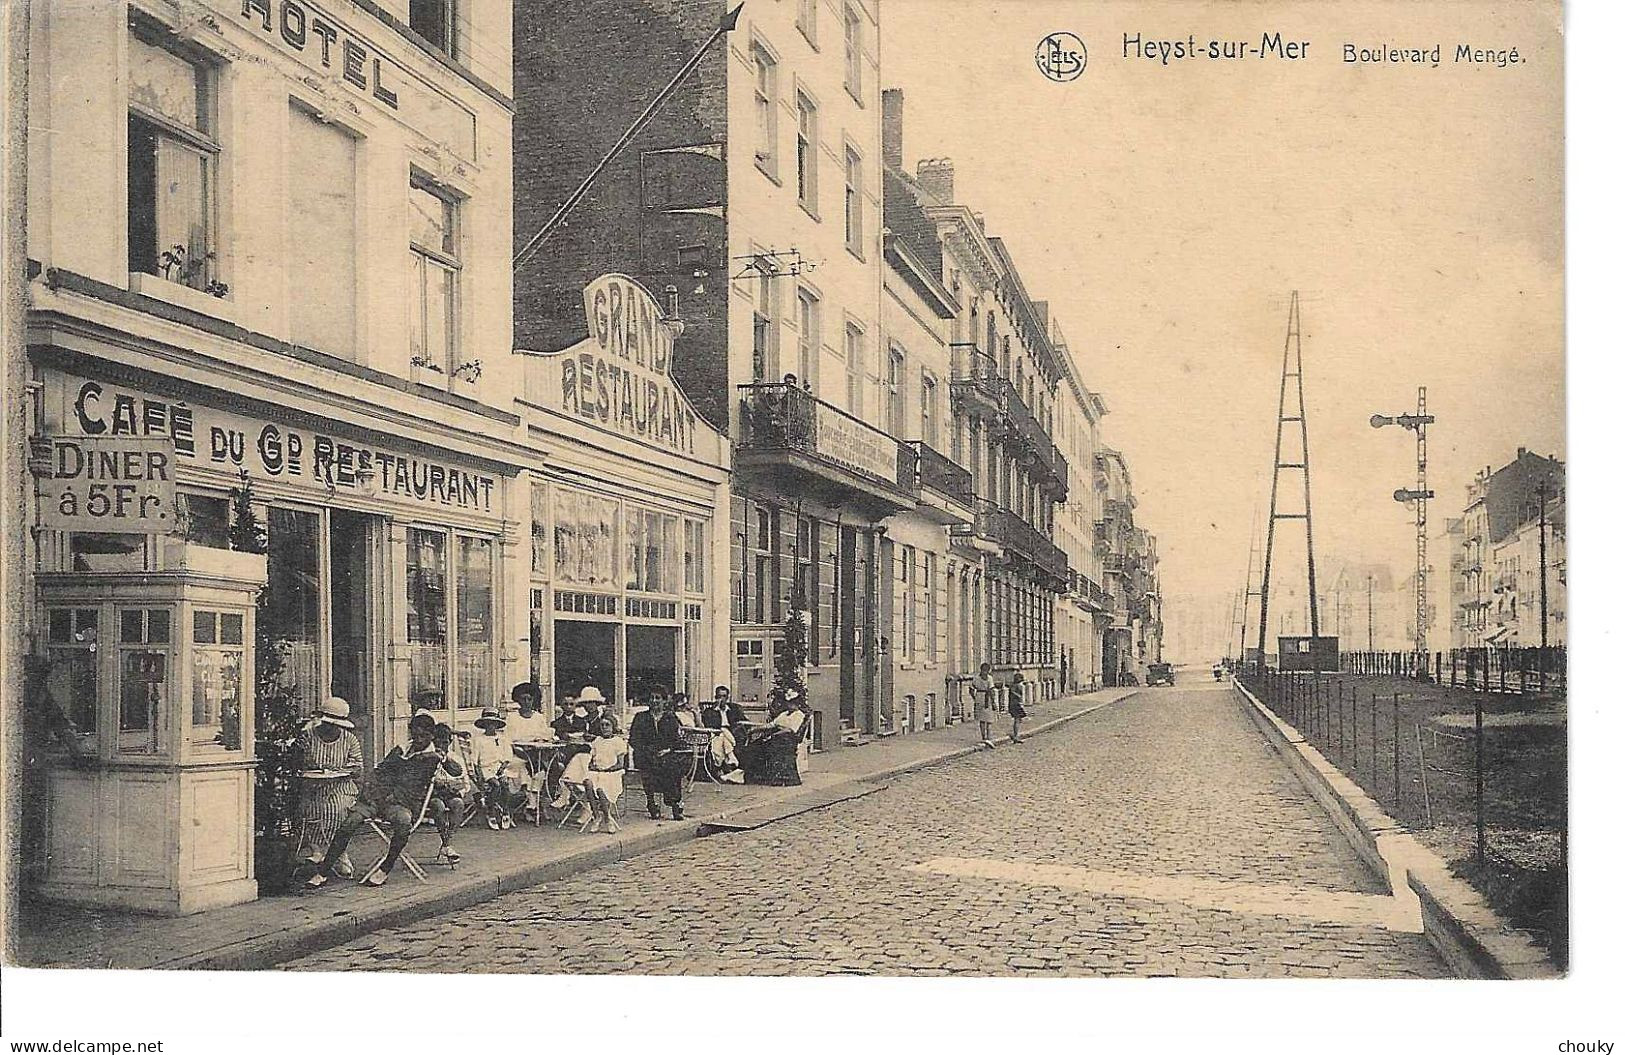 Heyst-sur-Mer (1923) - Heist